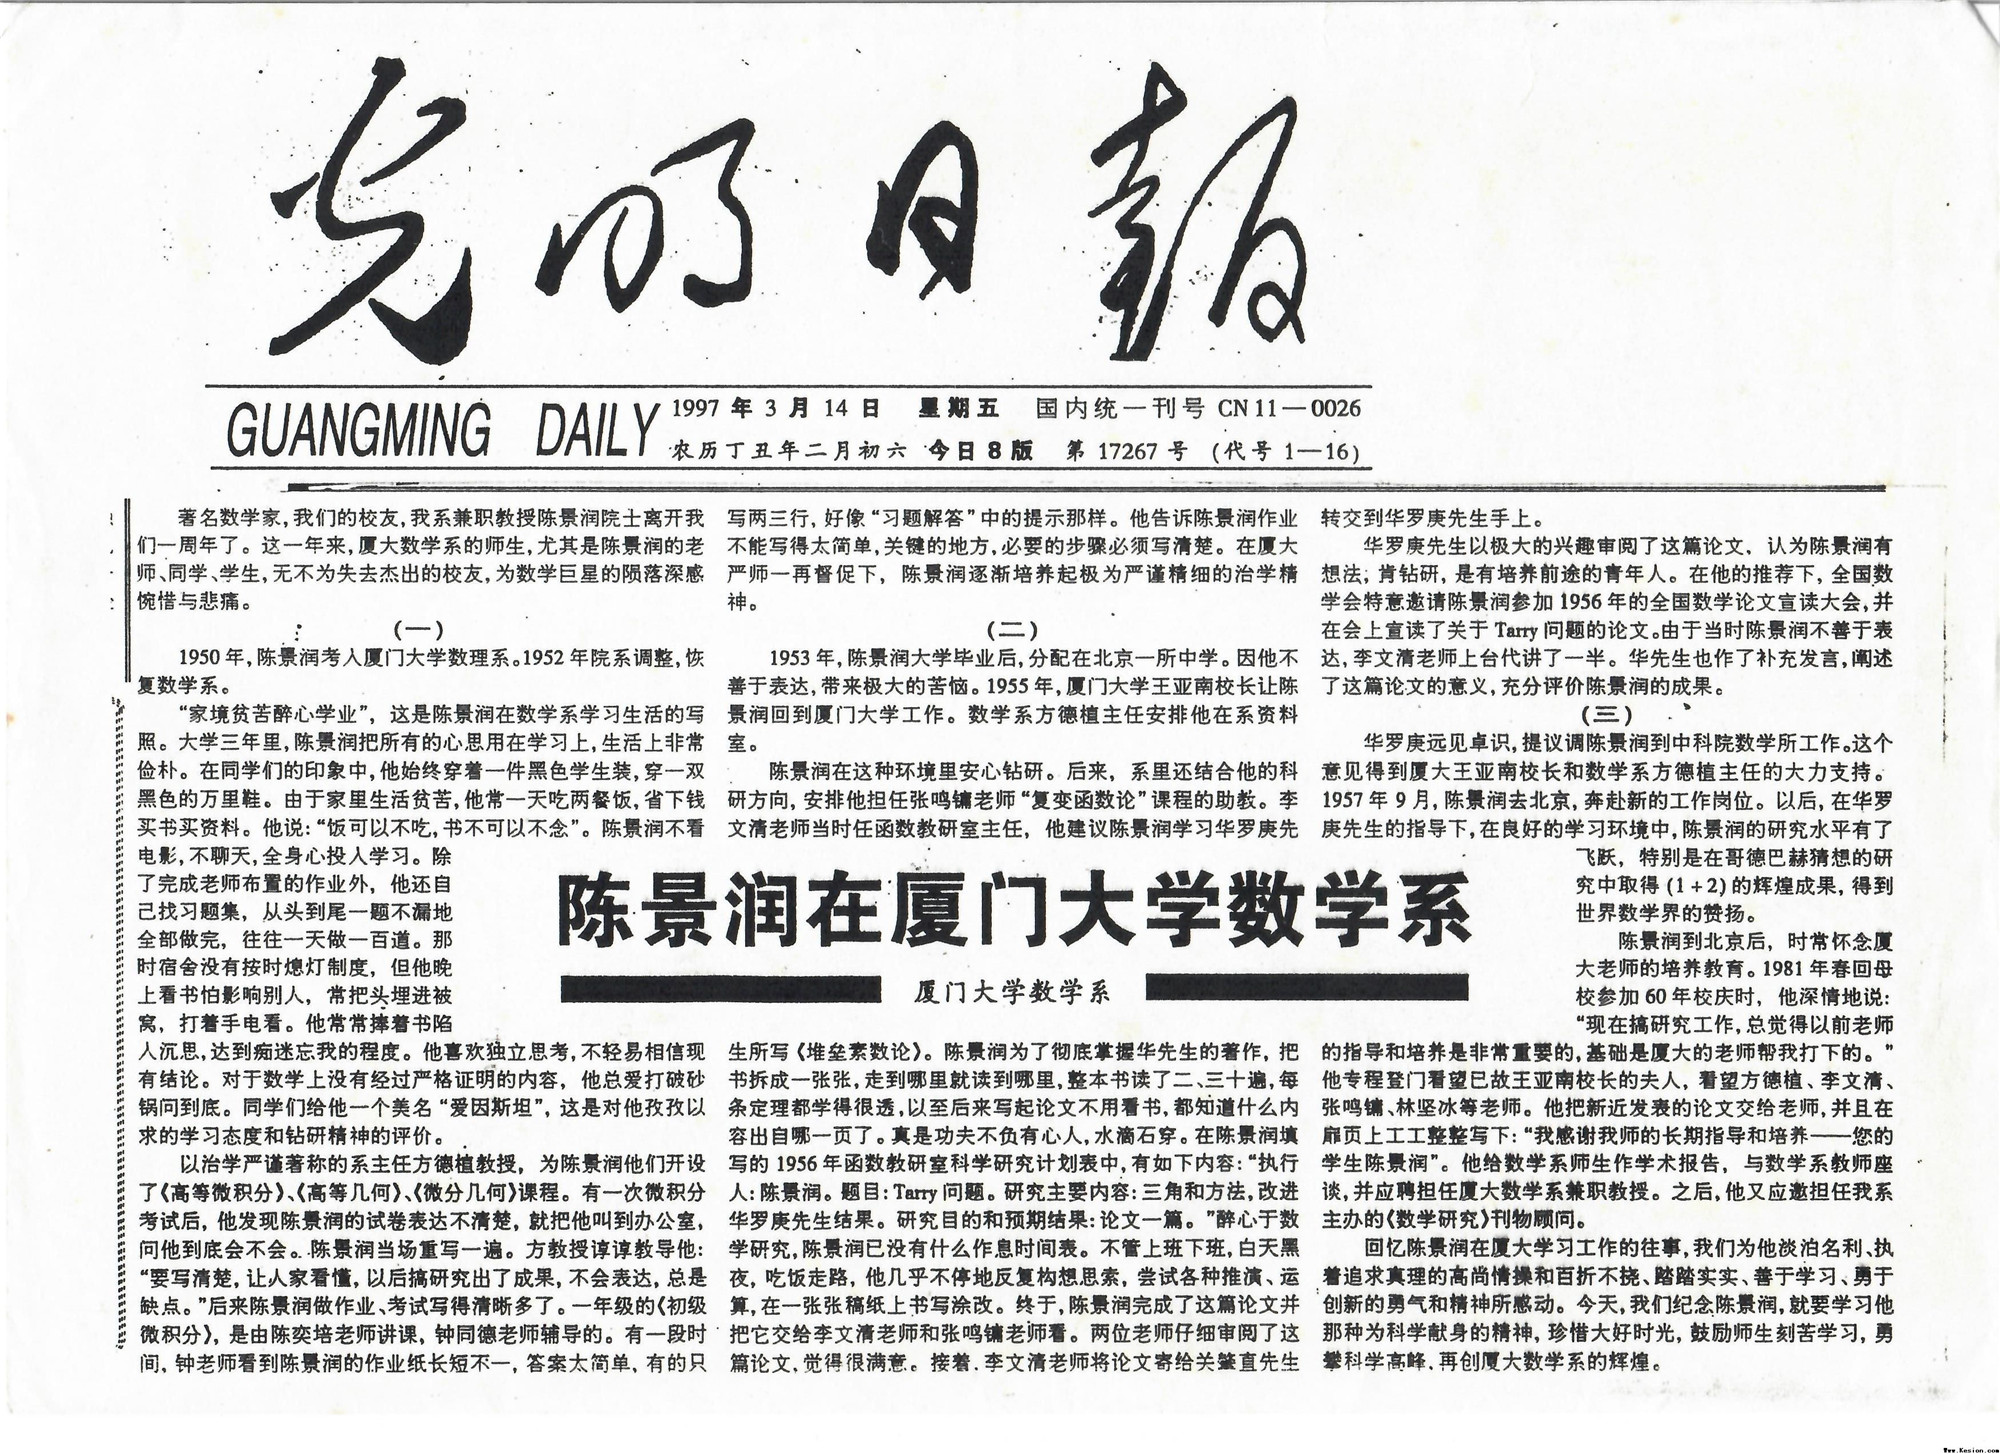 1997年3月14日光明日报刊发《陈景润在亚搏ag捕鱼app数学系》